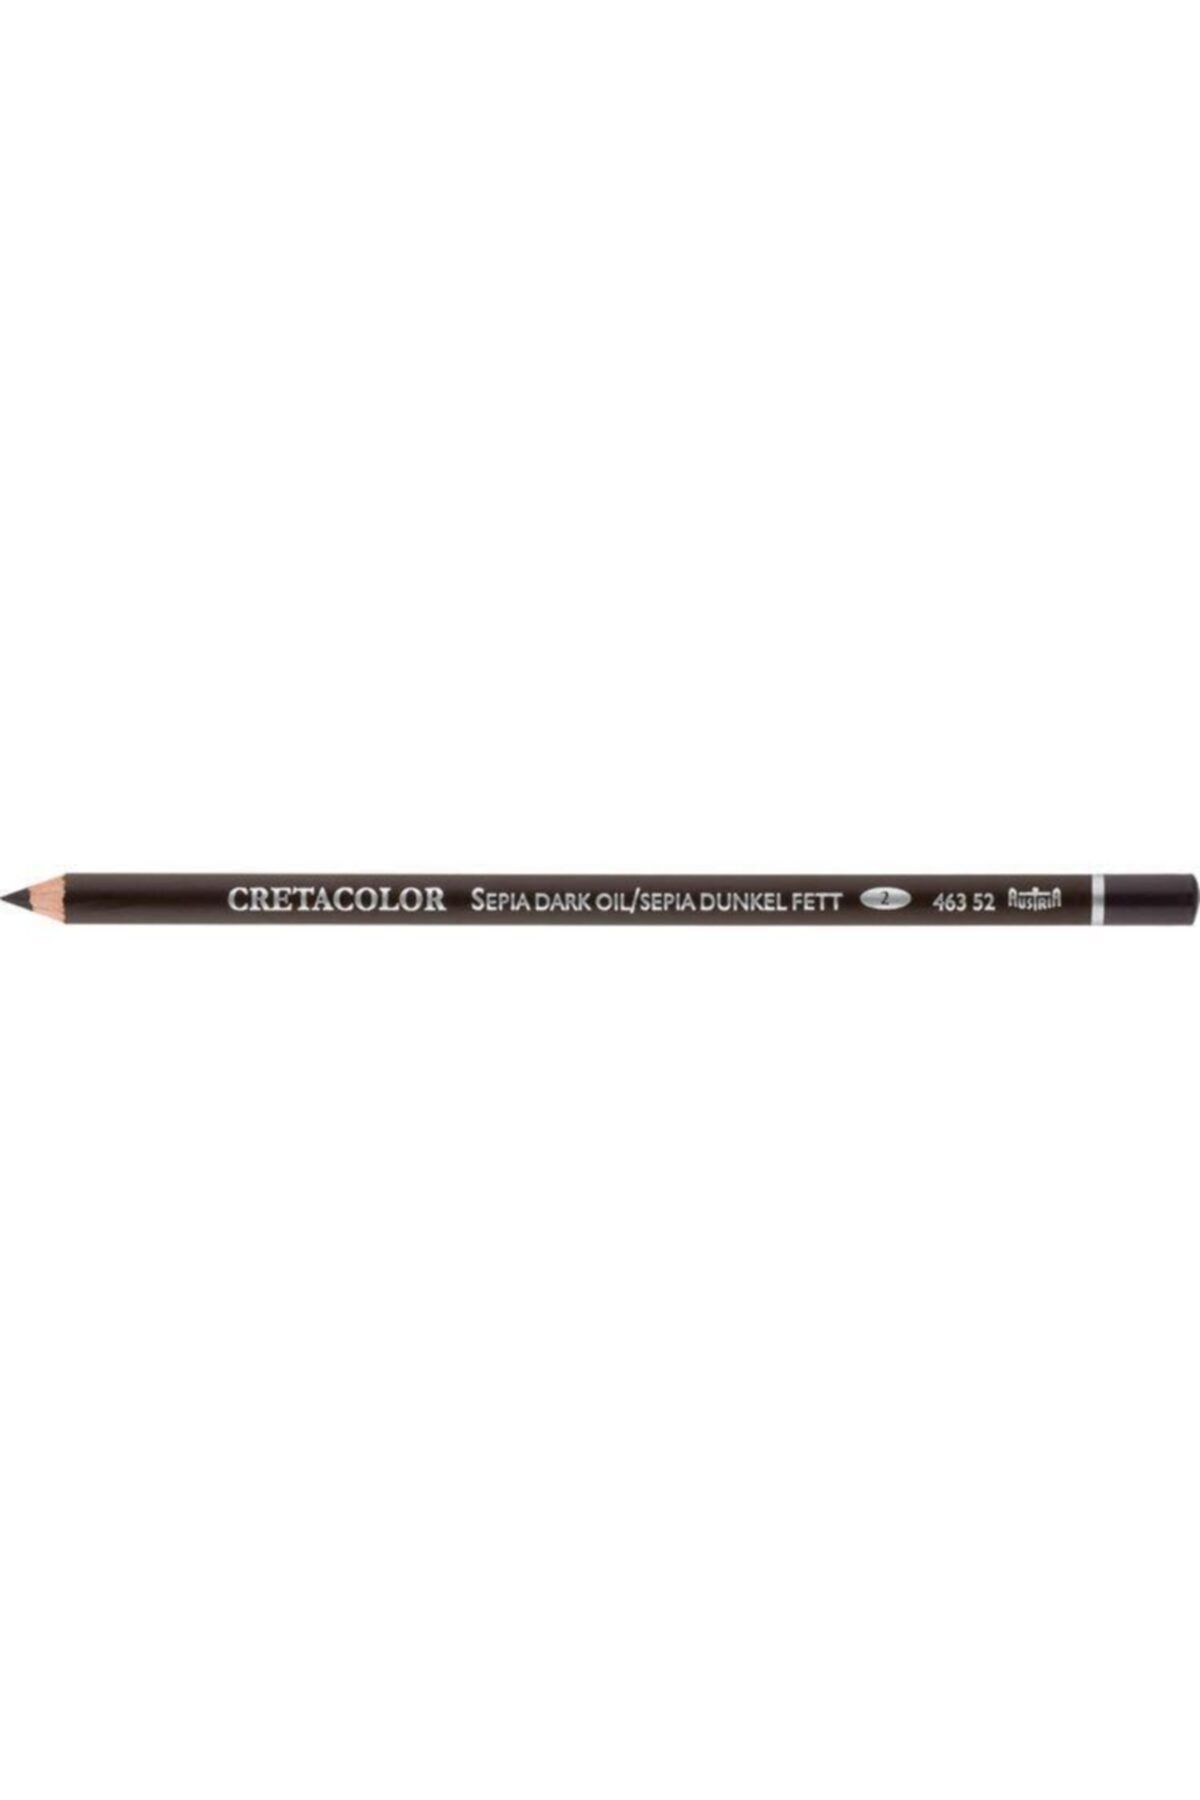 CretaColor Sepia Dark Oil Pencil Yağlı Tebeşir Kalemi (463 52)